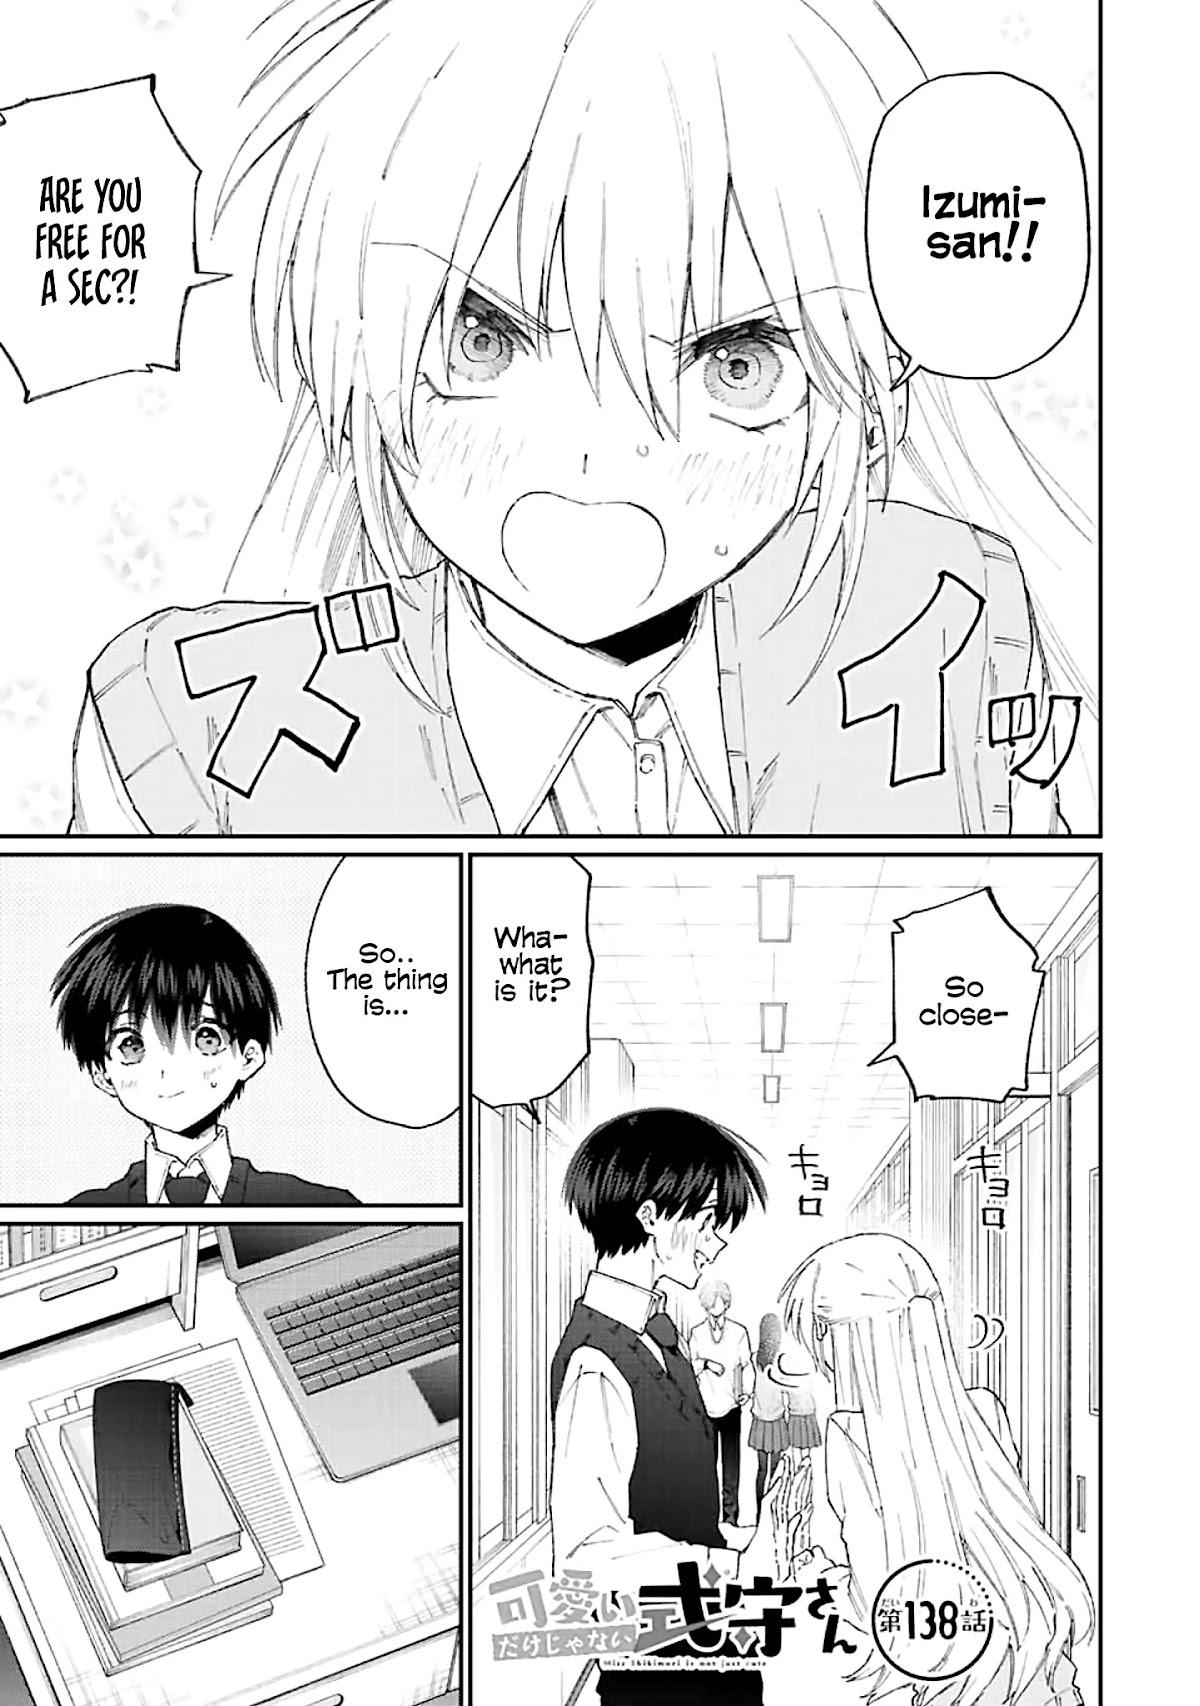 Read Shikimori's Not Just A Cutie Chapter 84 on Mangakakalot